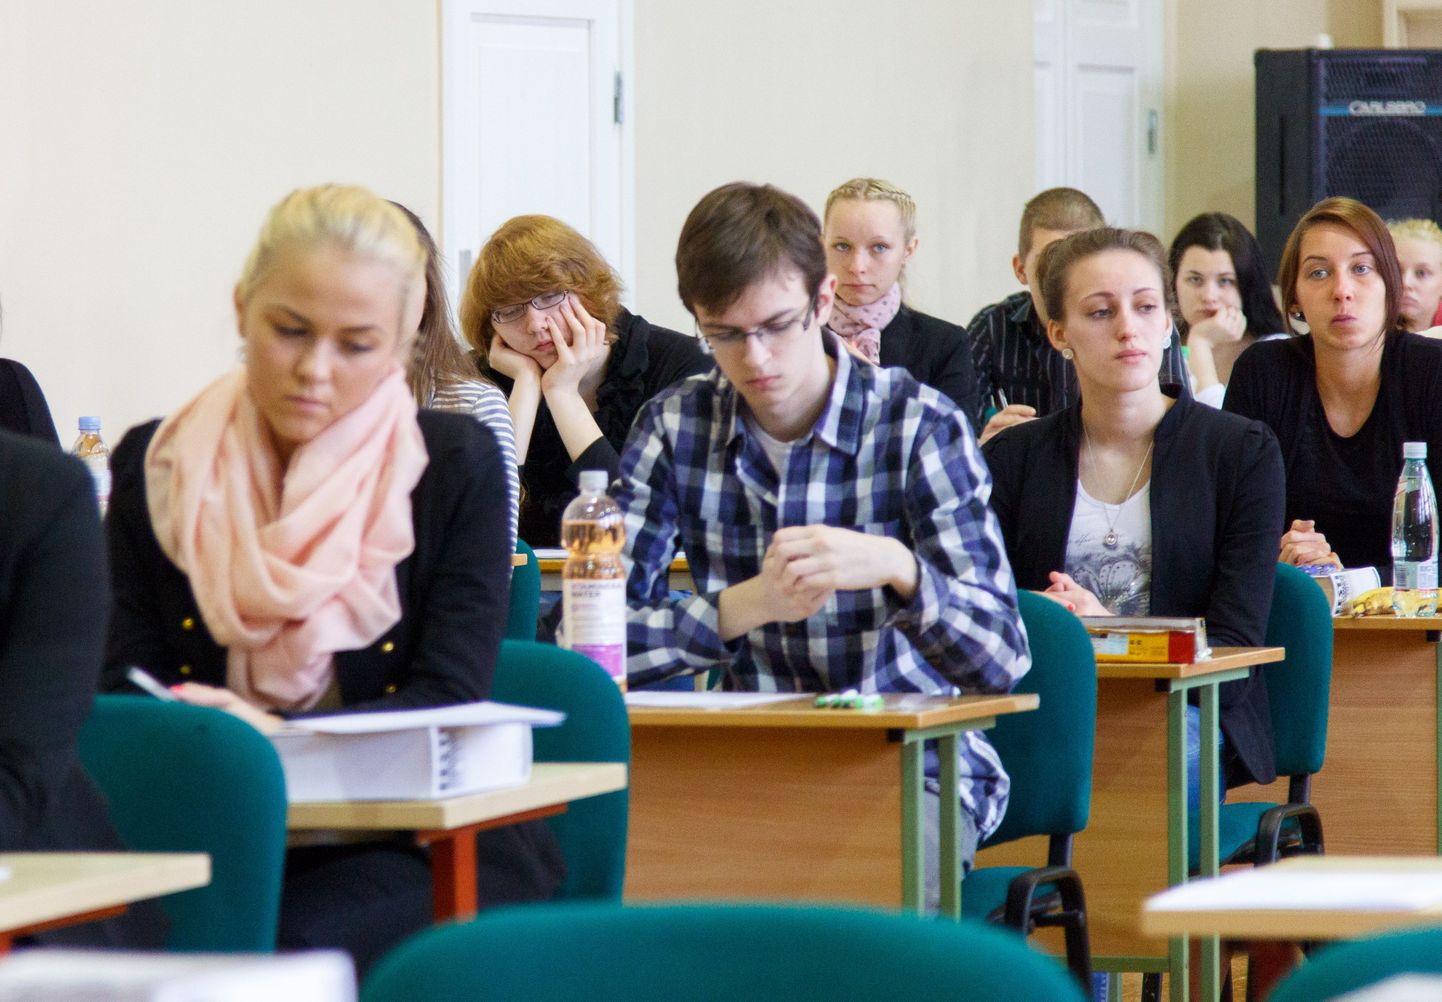 Eile kogunes Valga gümnaasiumi aulasse eesti keele eksamit sooritama 67 abiturienti, kellest 9 oli pärit Tsirguliina keskkoolist.